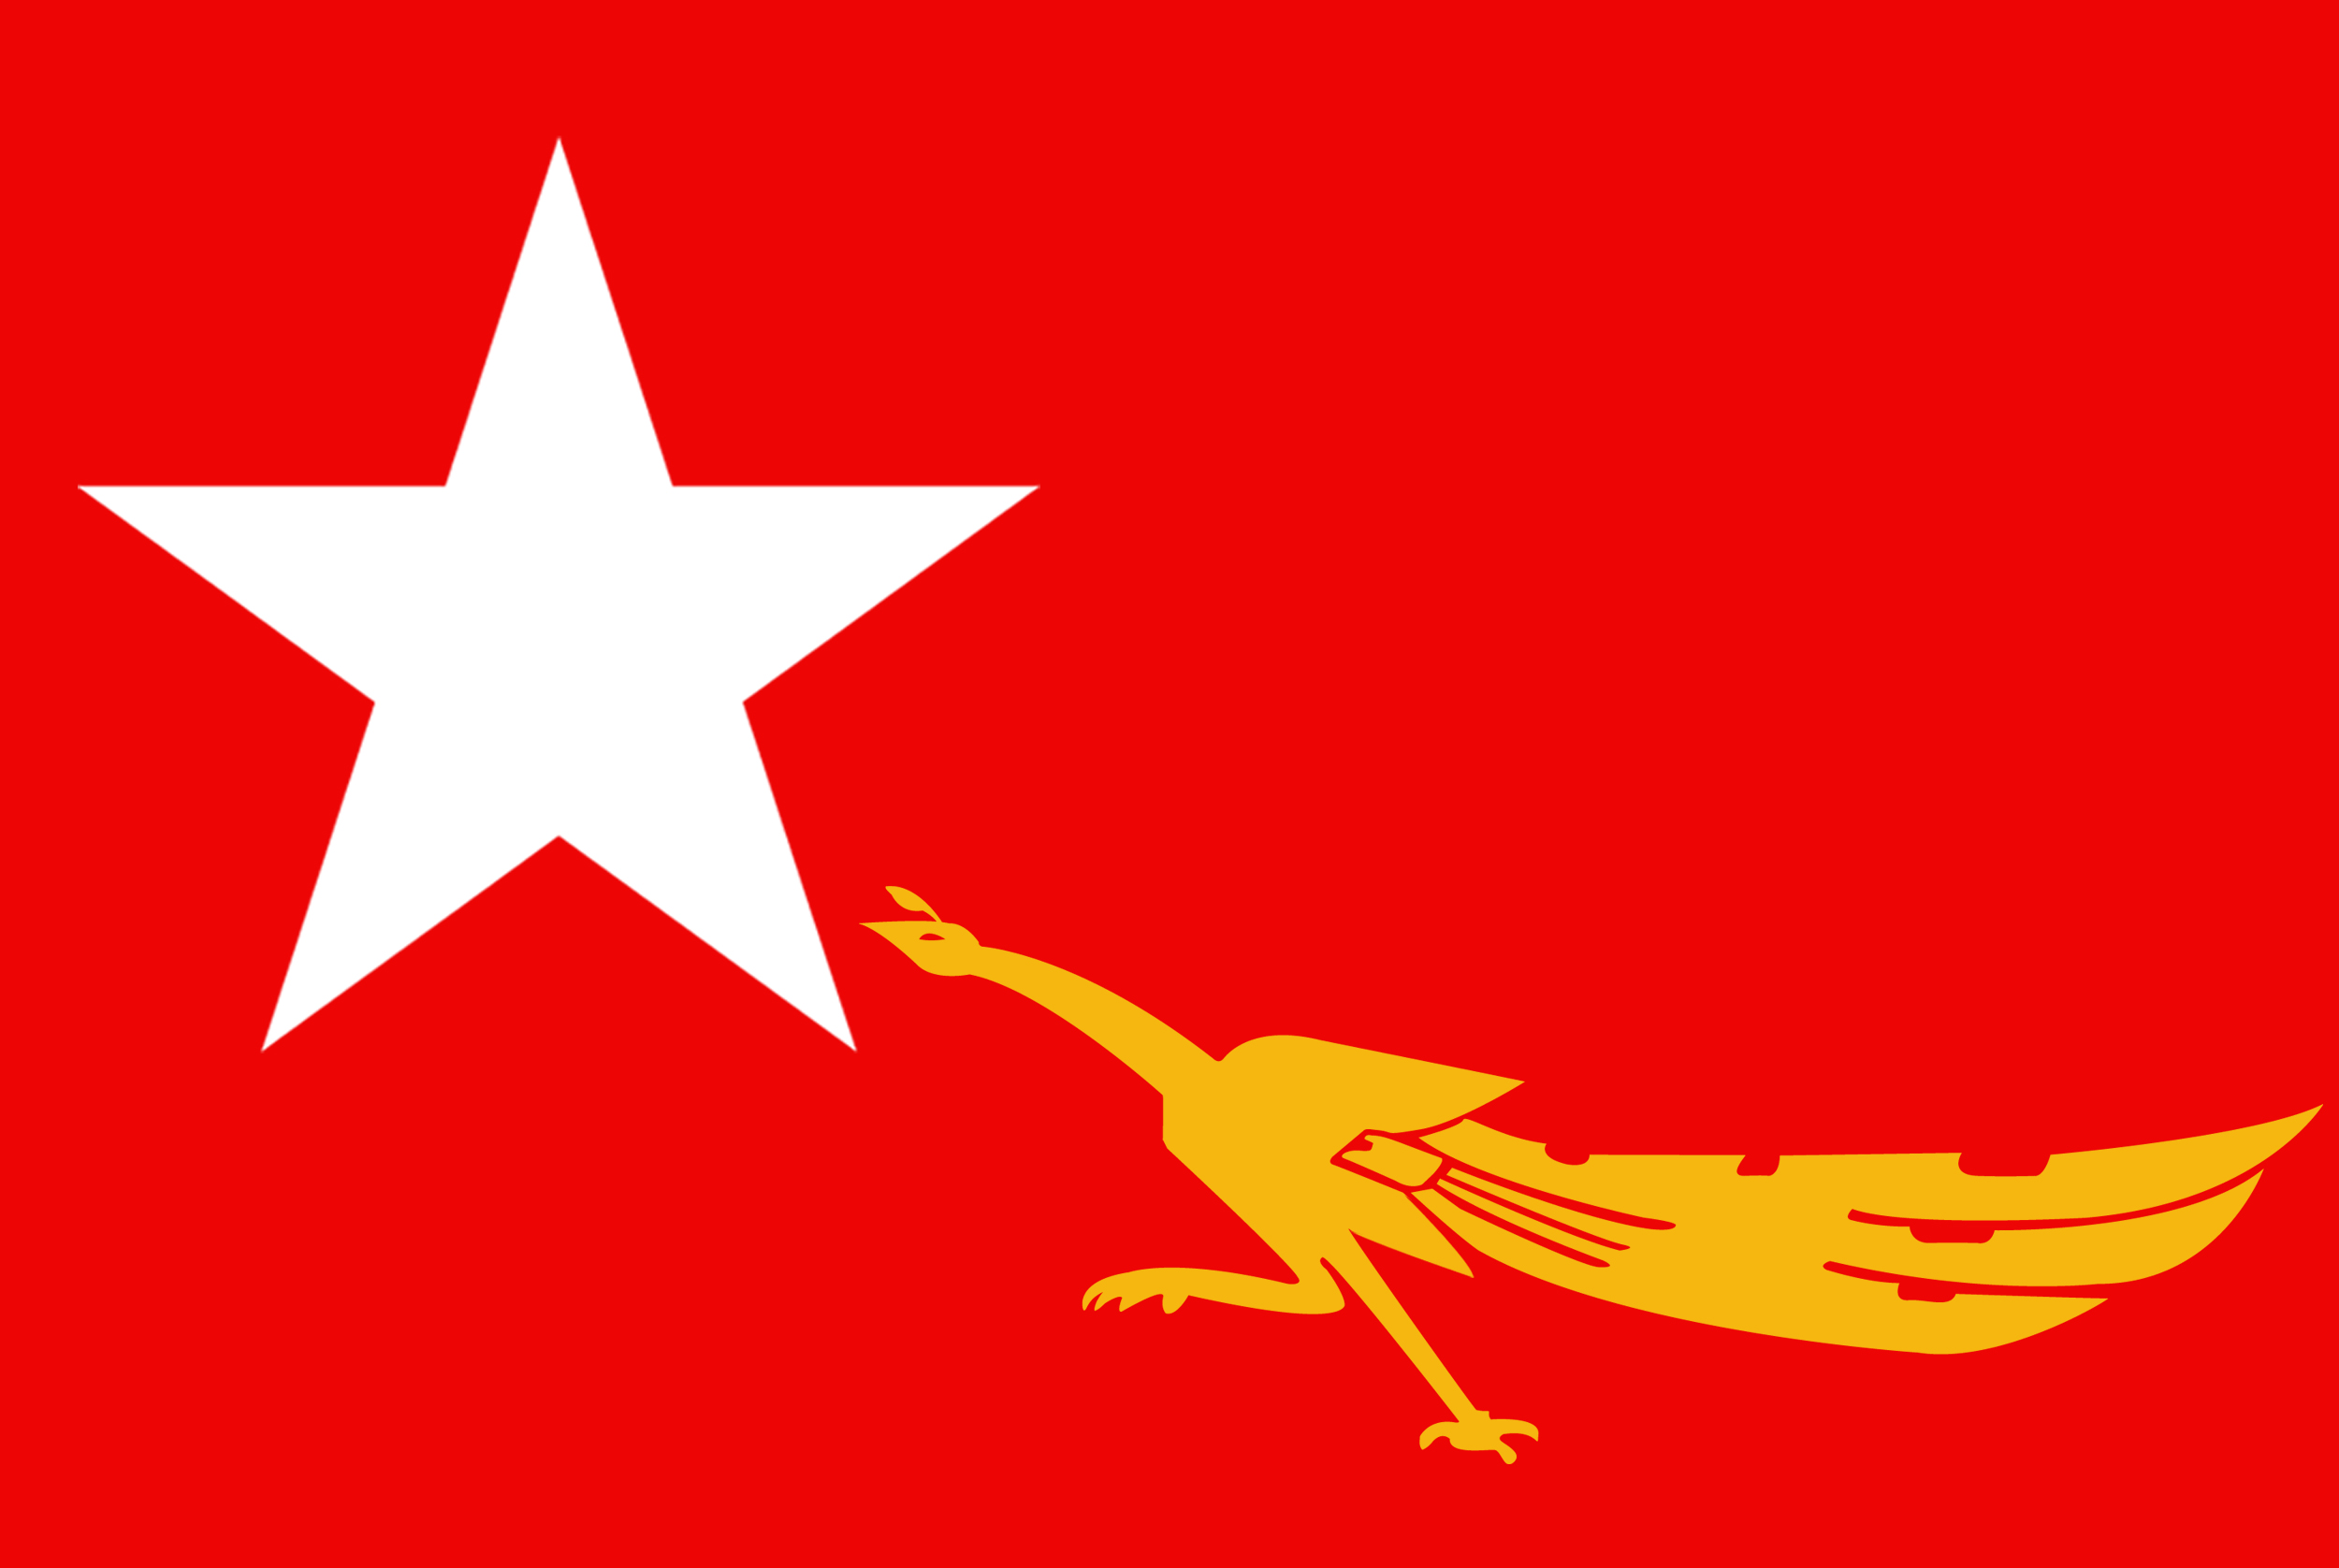 အမျိုးသားဒီမိုကရေစီ အဖွဲ့ချုပ် (NLD) Flag